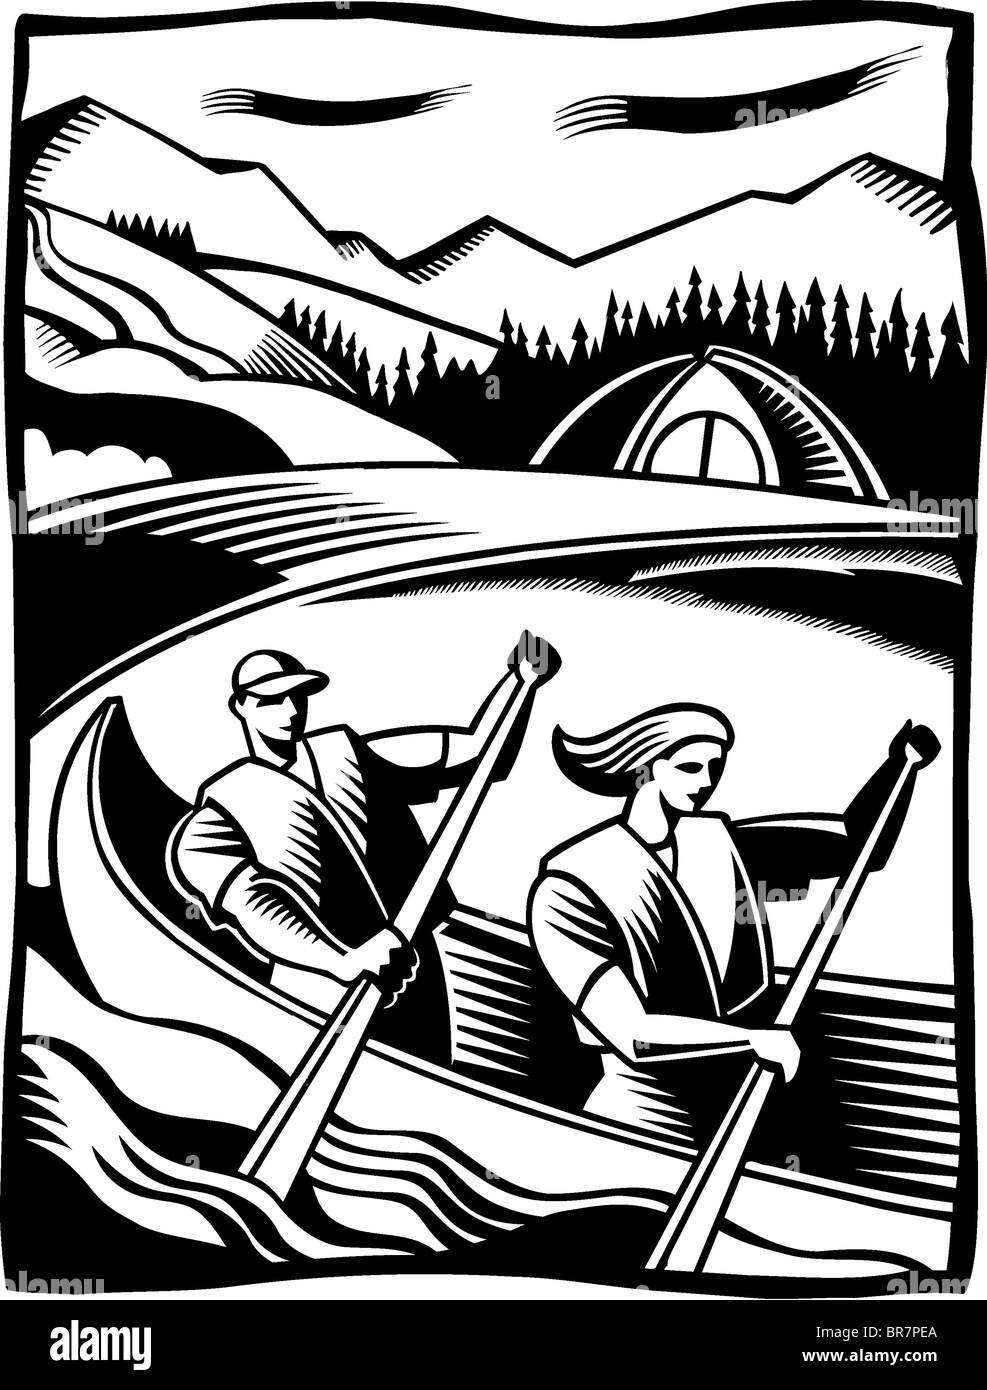 Un dessin en noir et blanc d'un couple canoë dans une rivière Banque D'Images